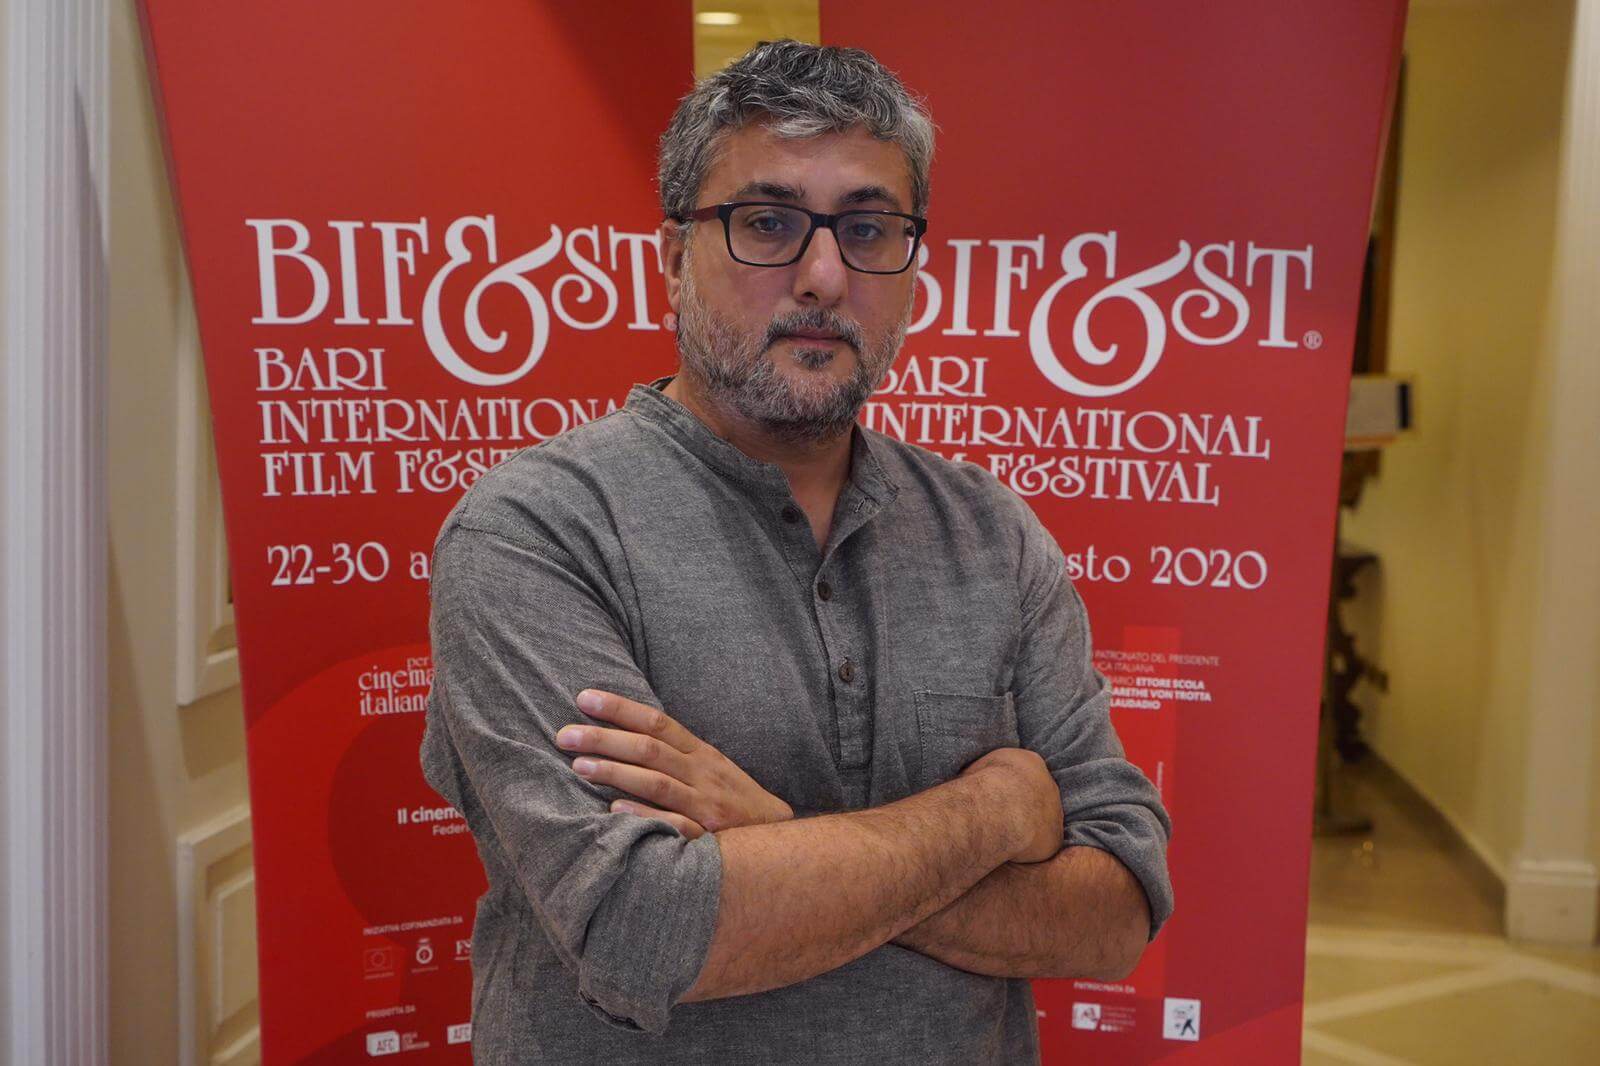 Bif&st 2020 – Giuseppe Bonito parla del suo nuovo film: L’Arminuta con Antonia Truppo